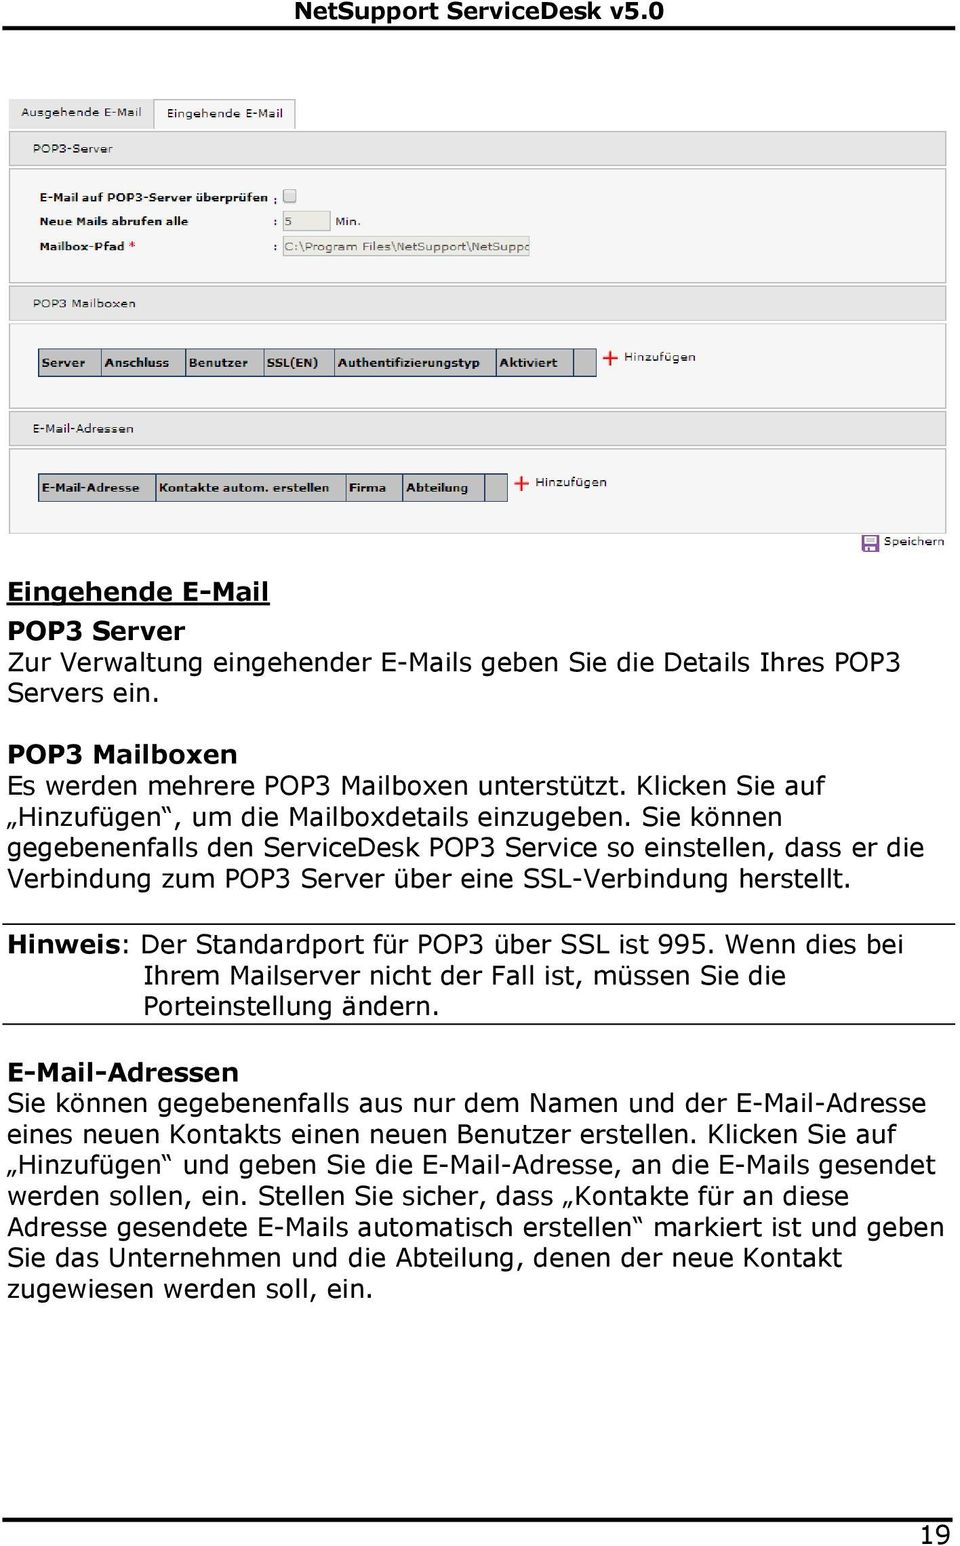 Sie können gegebenenfalls den ServiceDesk POP3 Service so einstellen, dass er die Verbindung zum POP3 Server über eine SSL-Verbindung herstellt. Hinweis: Der Standardport für POP3 über SSL ist 995.